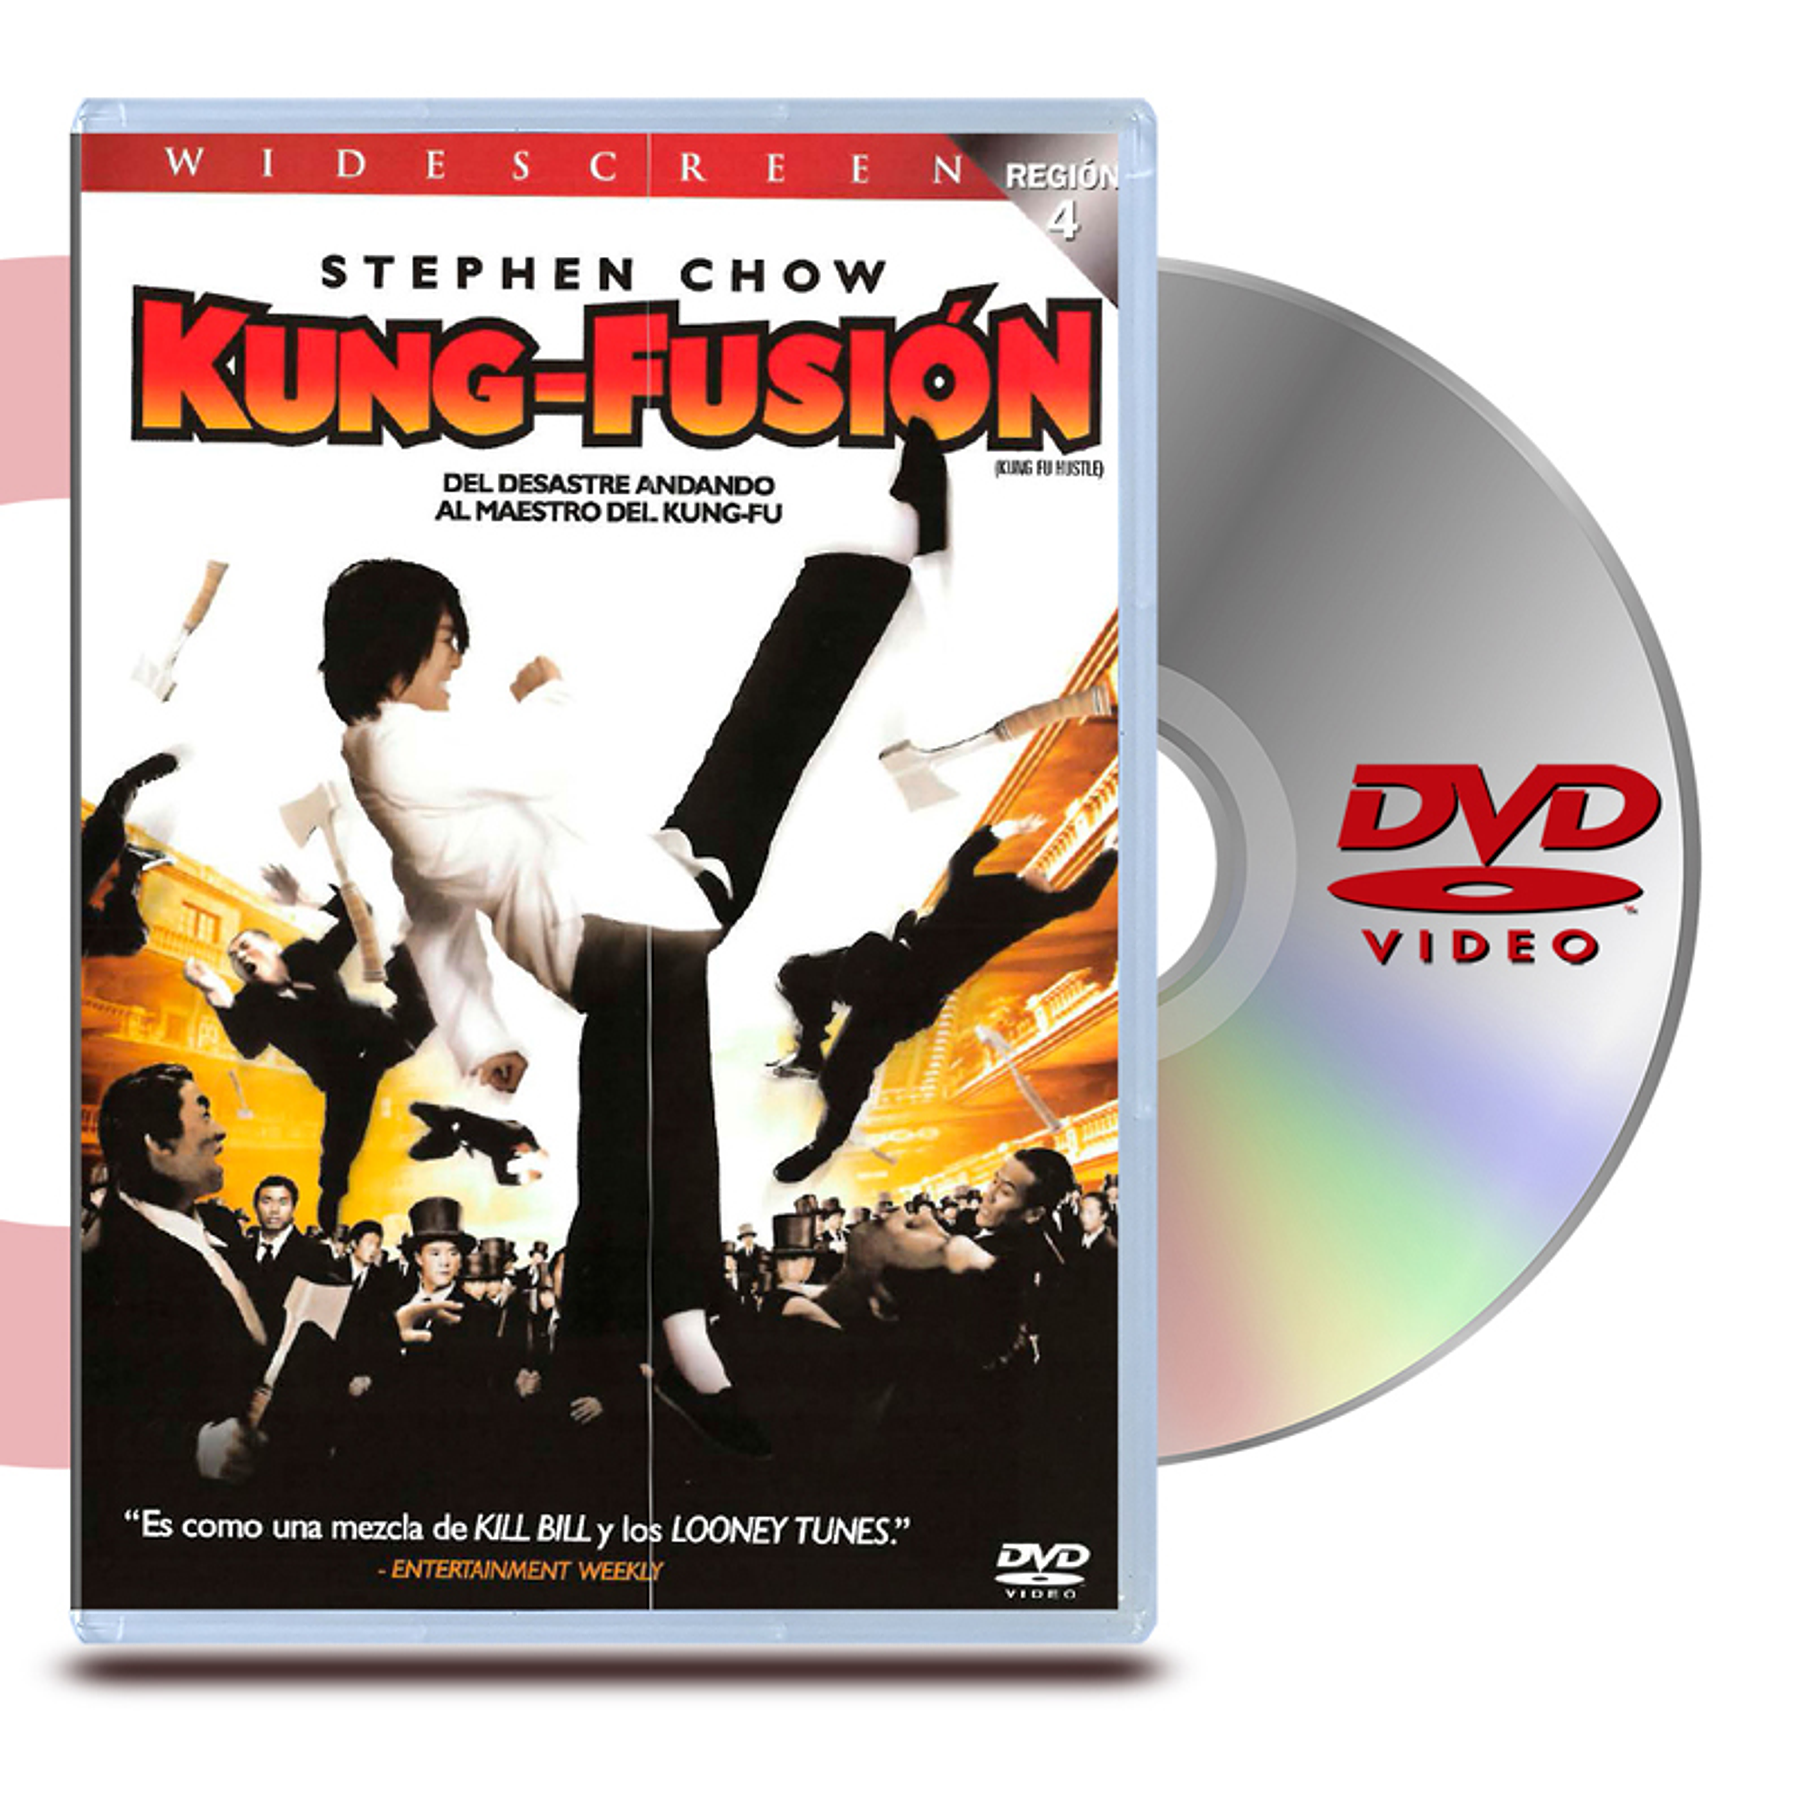 DVD KUNG FUSIÓN